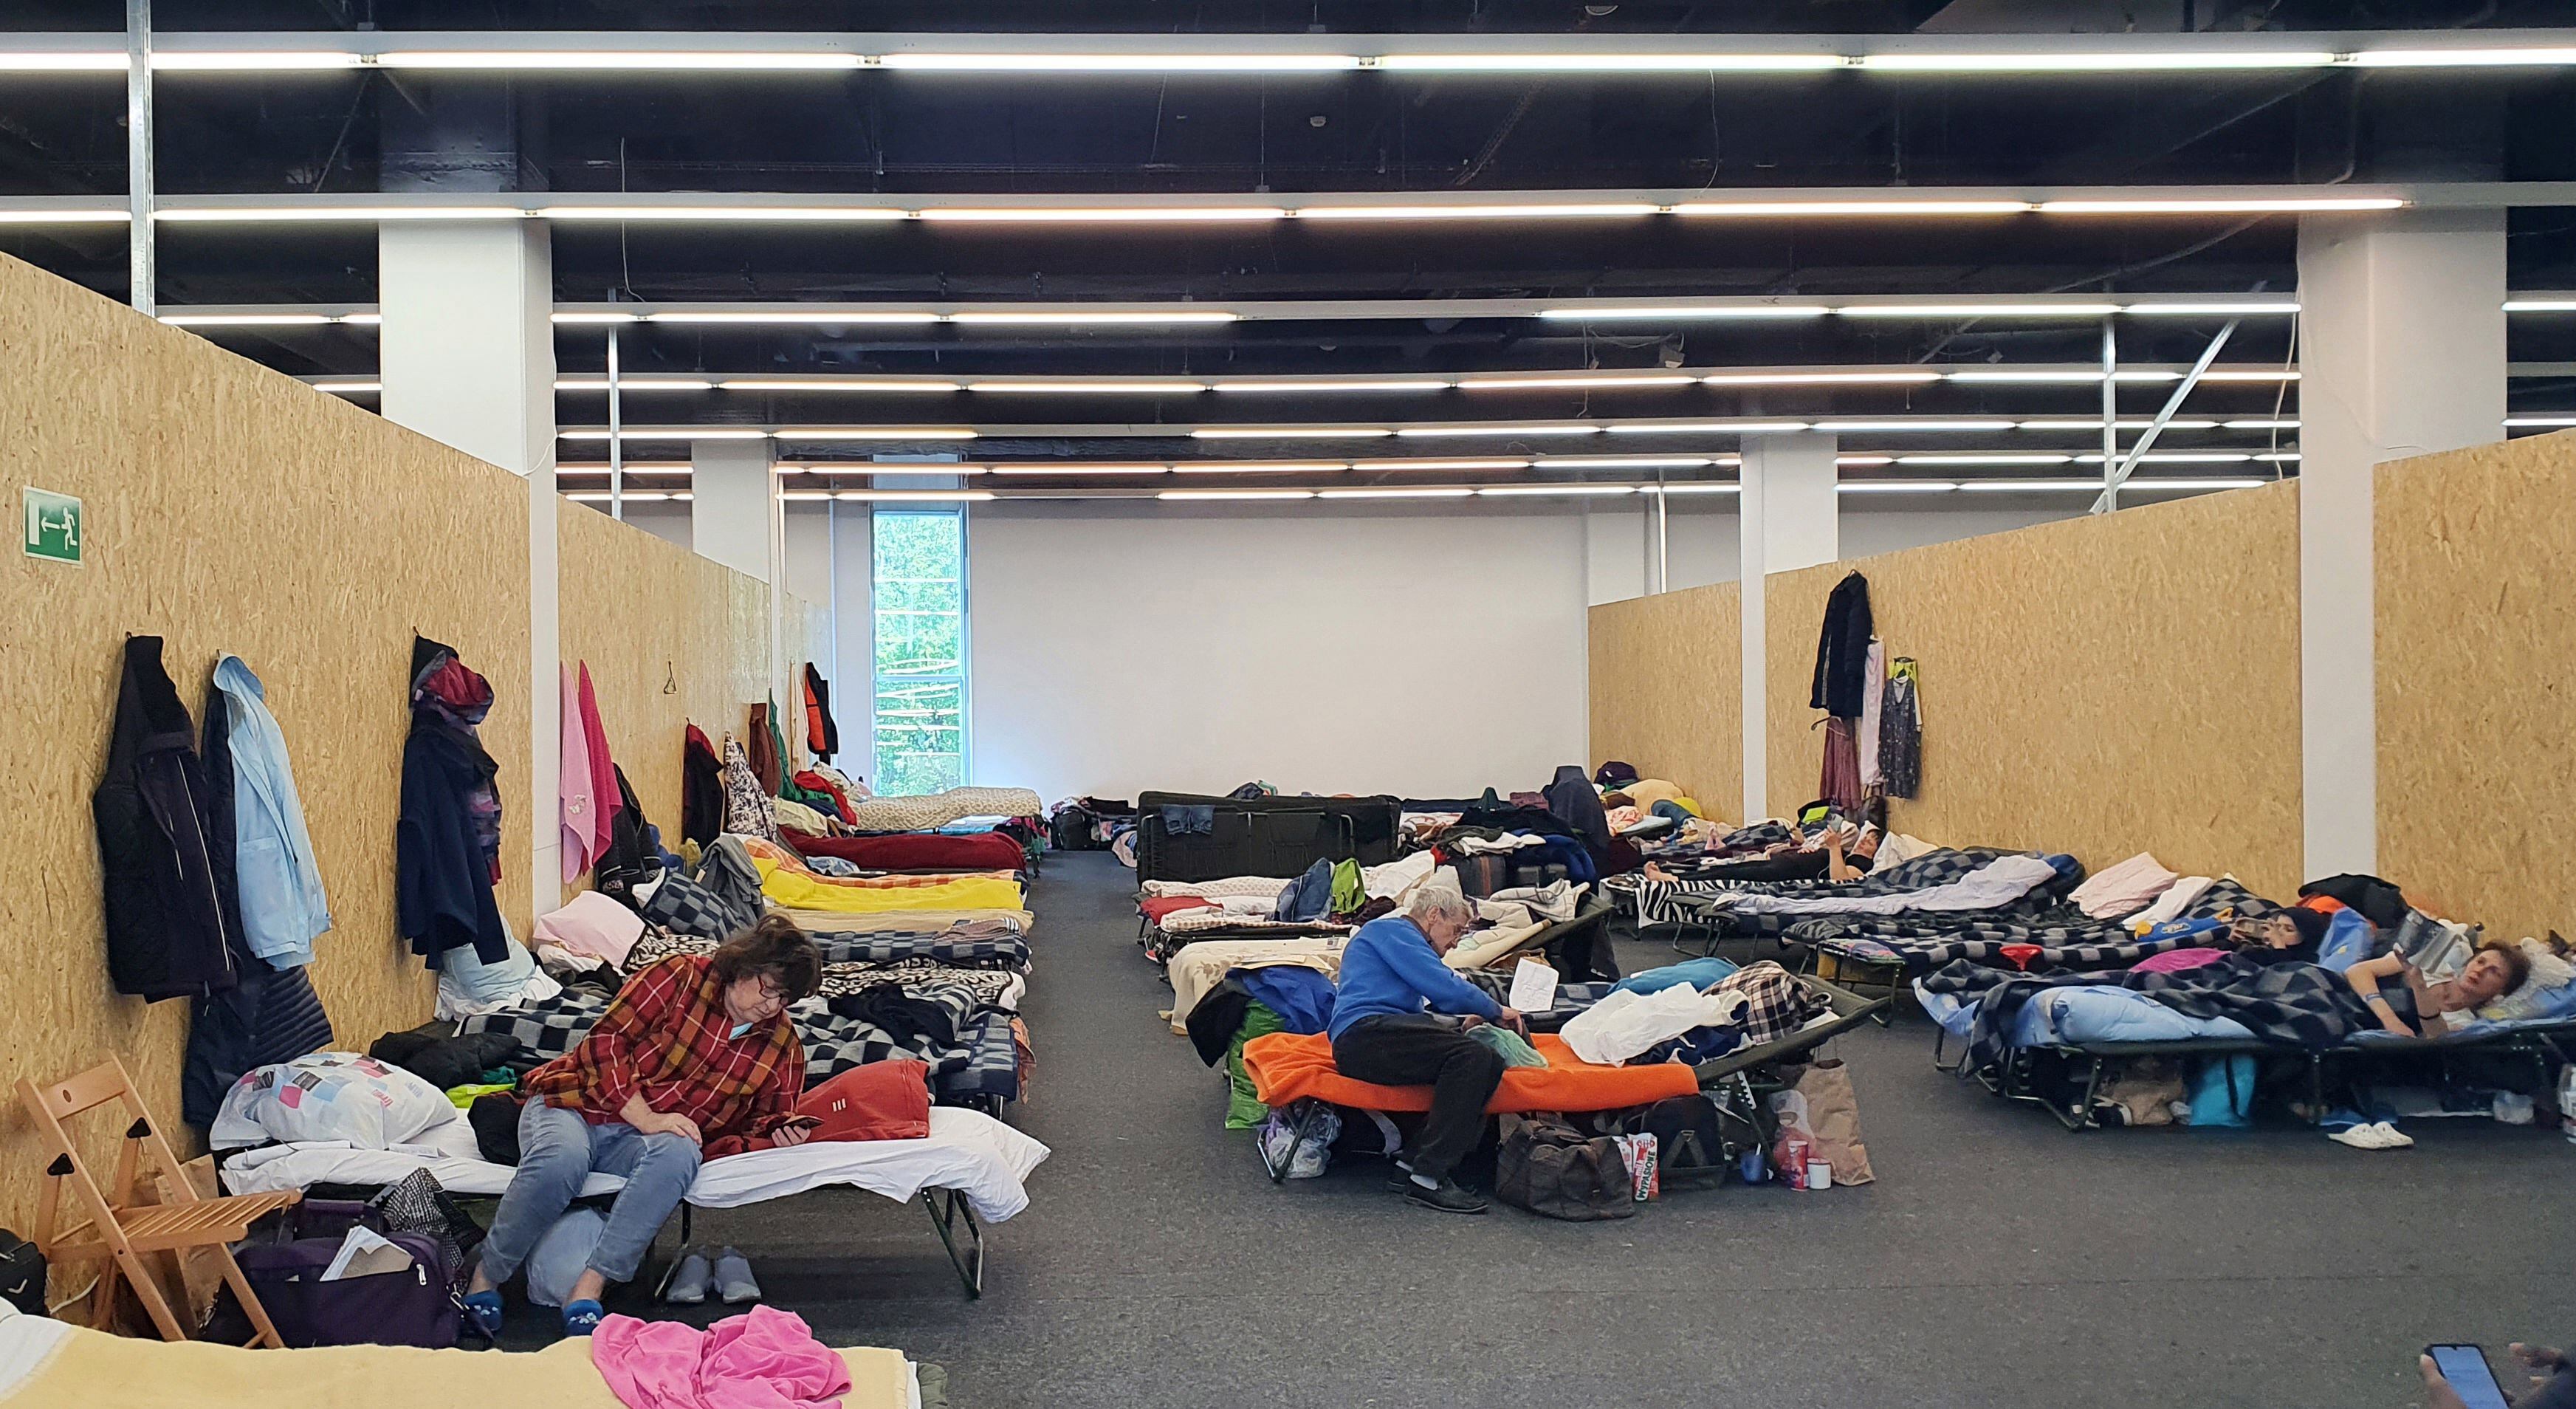 폴란드 크라쿠프 시내 한 쇼핑몰이 우크라이나 난민대피소로 활용되는 모습. 피난민들이 간이침대에서 생활하고 있다. /뉴스1